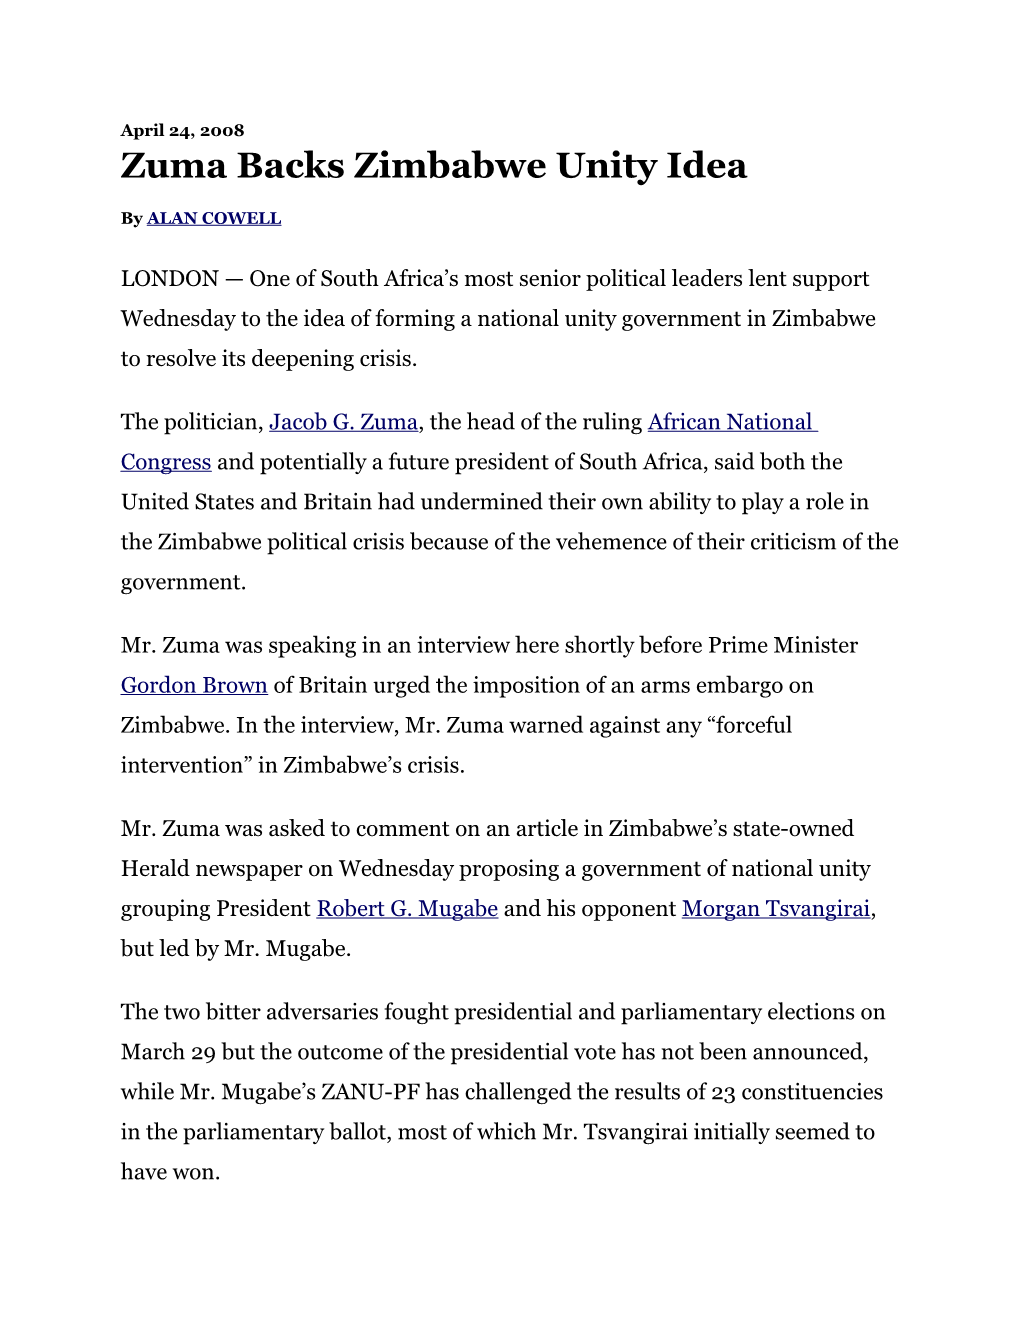 Zuma Backs Zimbabwe Unity Idea